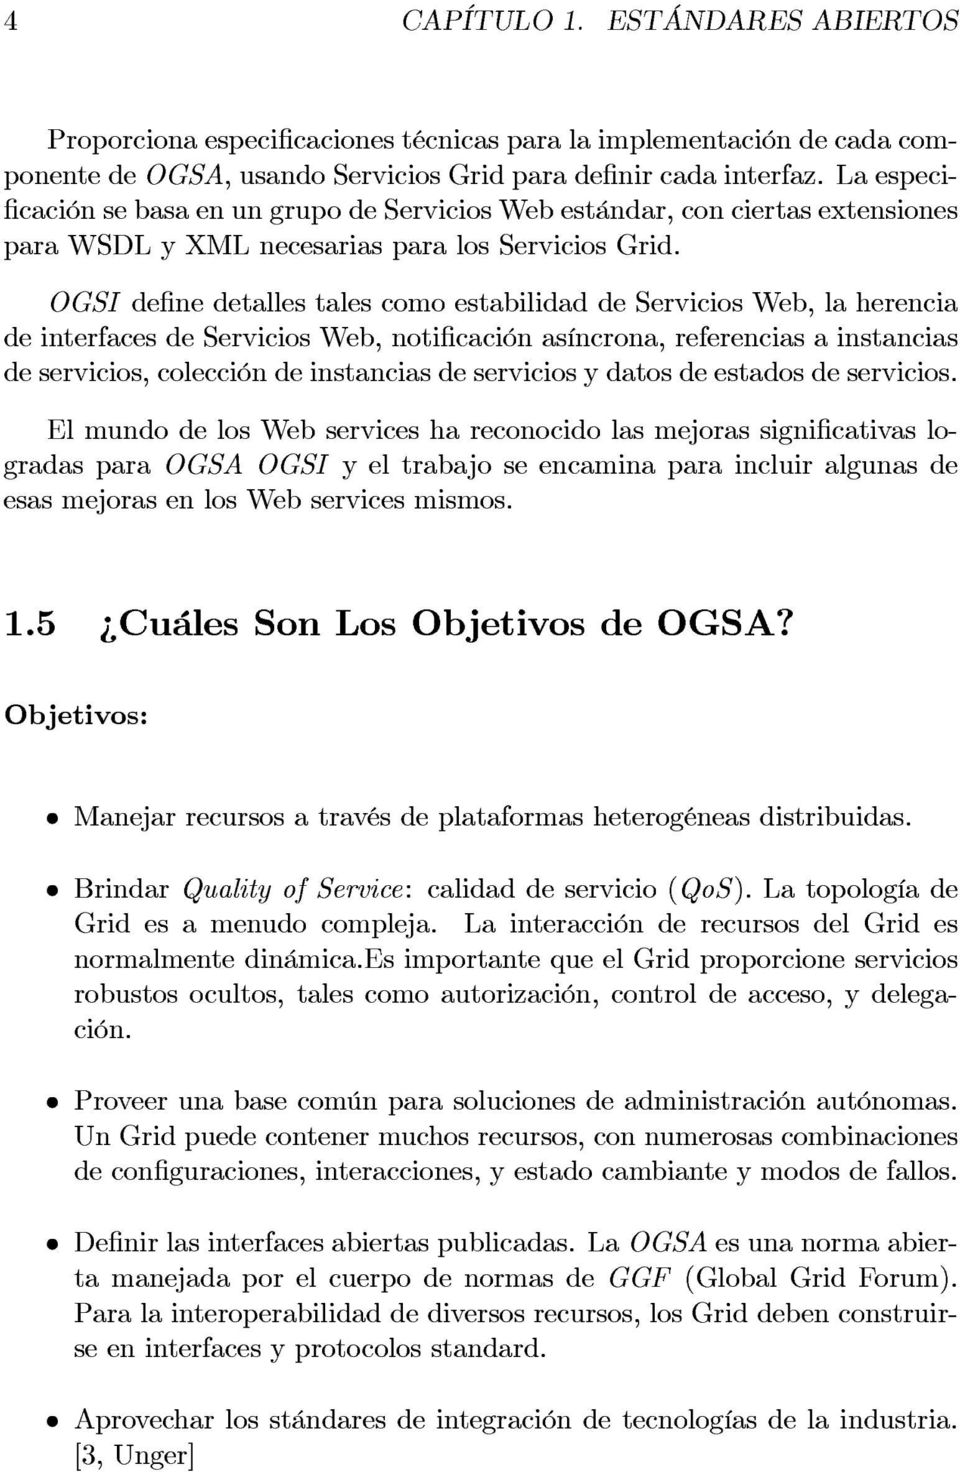 OGSI define detalles tales como estabilidad de Servicios Web, la herencia de interfaces de Servicios Web, notificación asíncrona, referencias a instancias de servicios, colección de instancias de